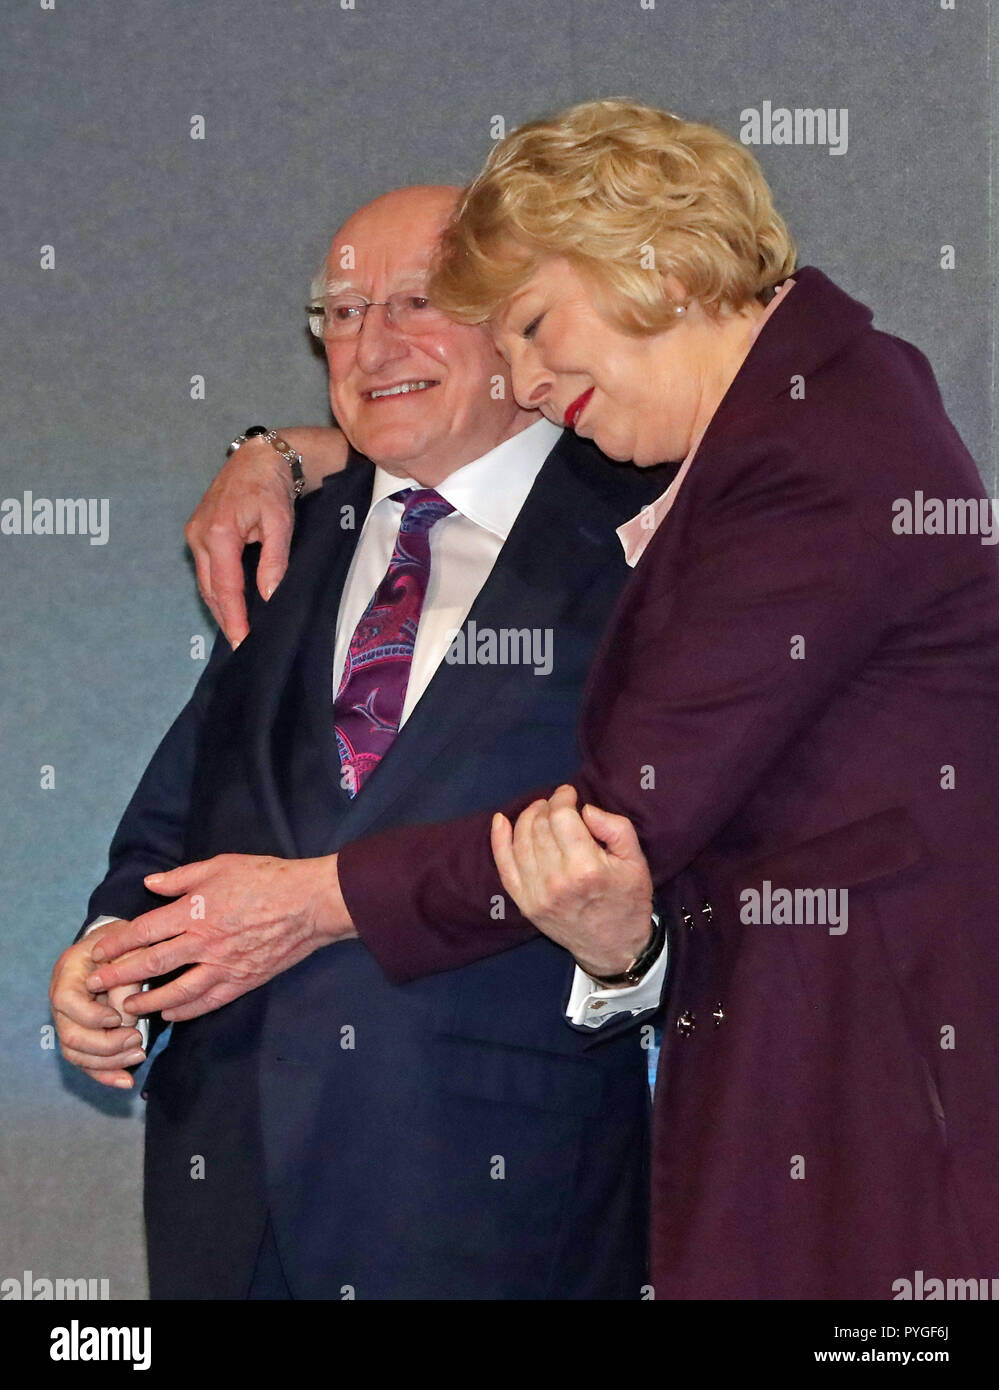 Michael D Higgins ist umarmte seine Frau Sabina in Dublin Castle, wie er als der Gewinner der Präsidentschaftswahlen in Irland Wahl angekündigt wird. Stockfoto